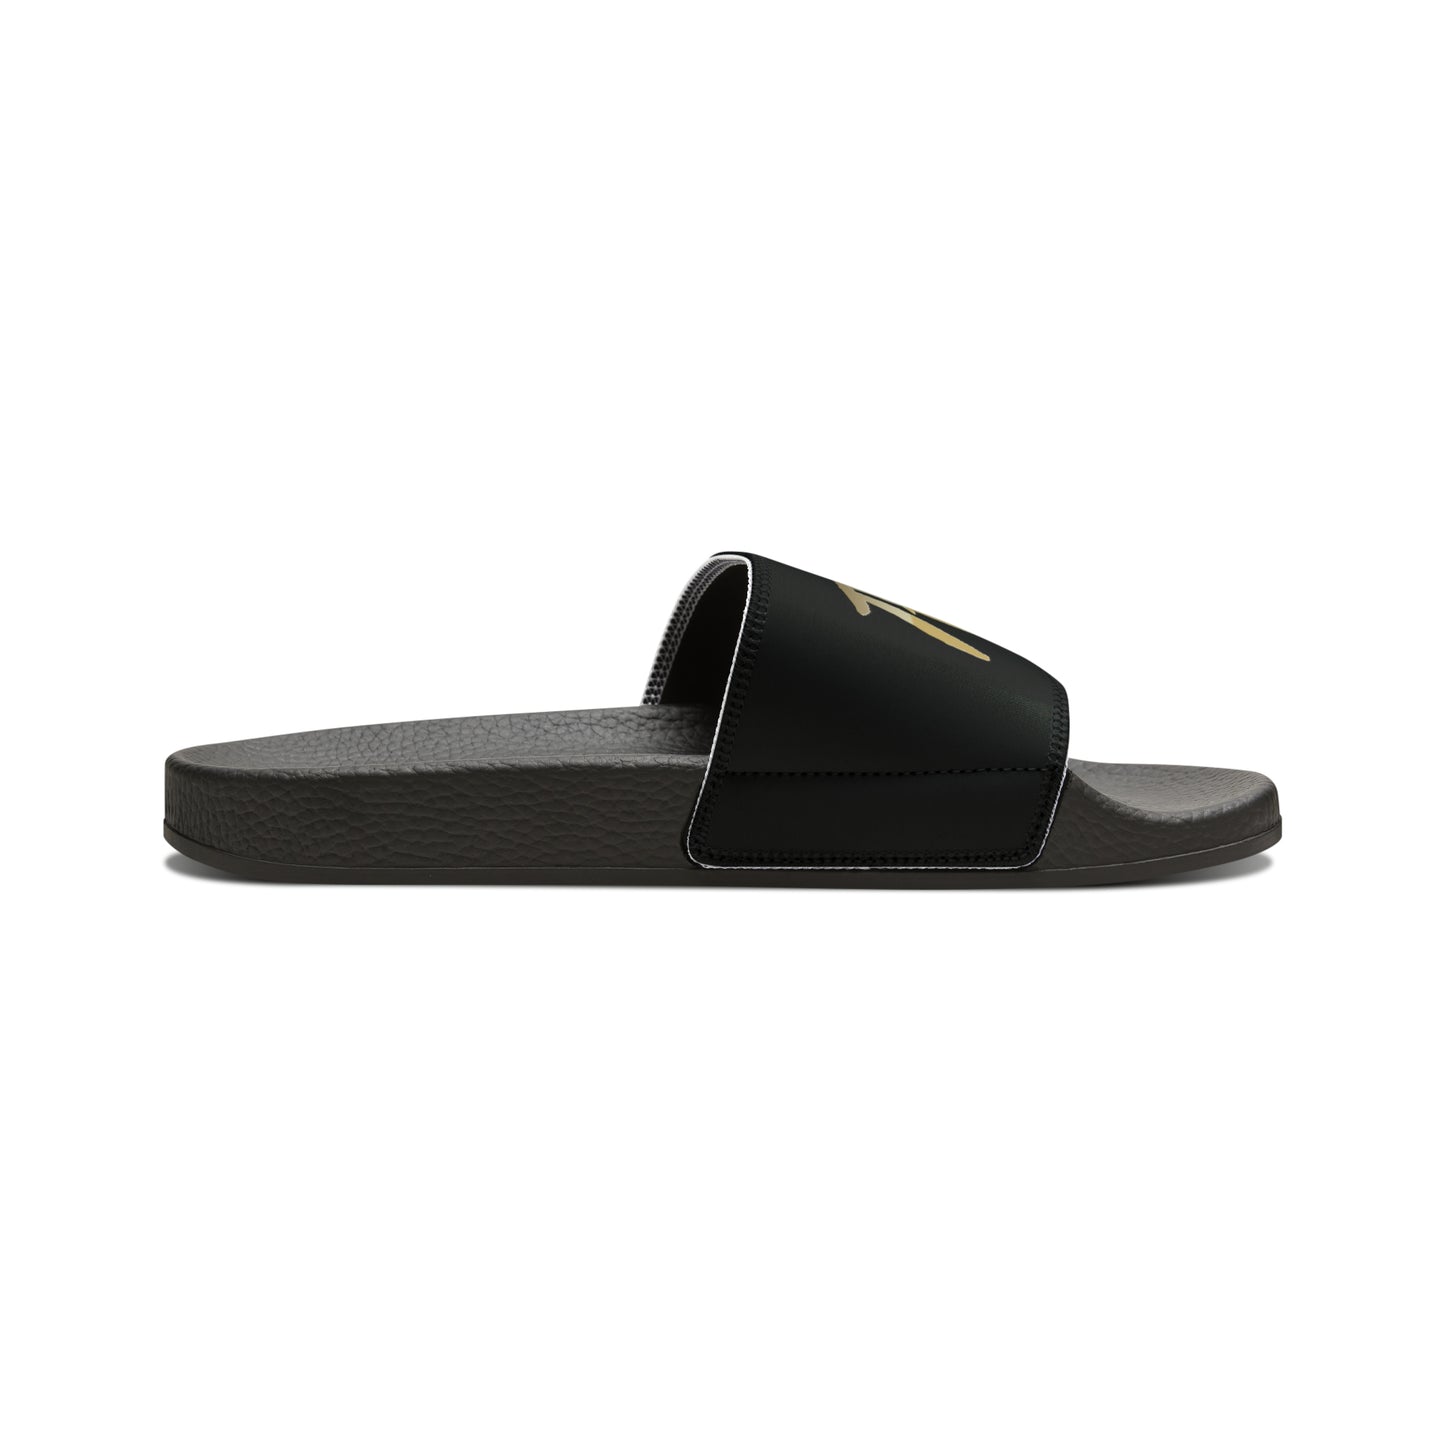 Fromth33rd Men's Slide Sandals (gold)